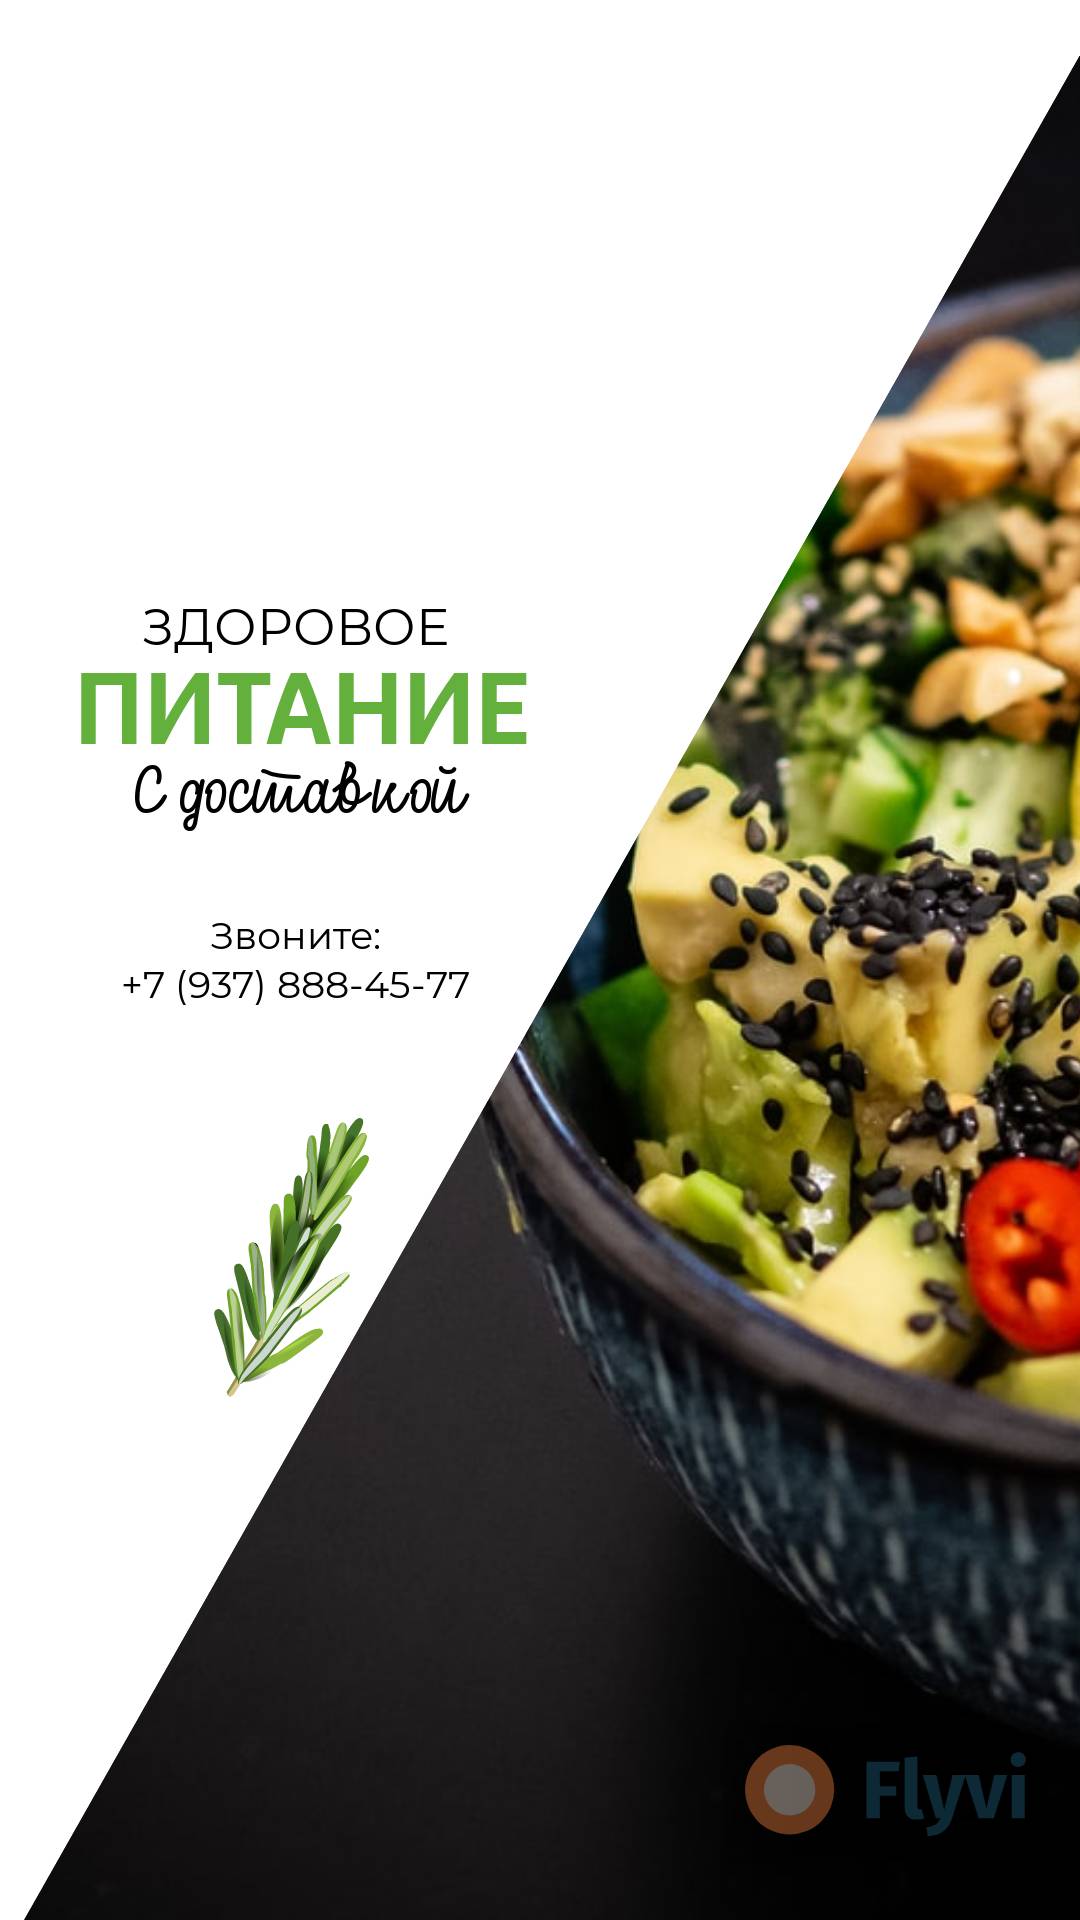 Сочный вегетарианский салат с авокадо, перцем и кунжутом в готовой рекламе в сторис Здоровое питание с доставкой